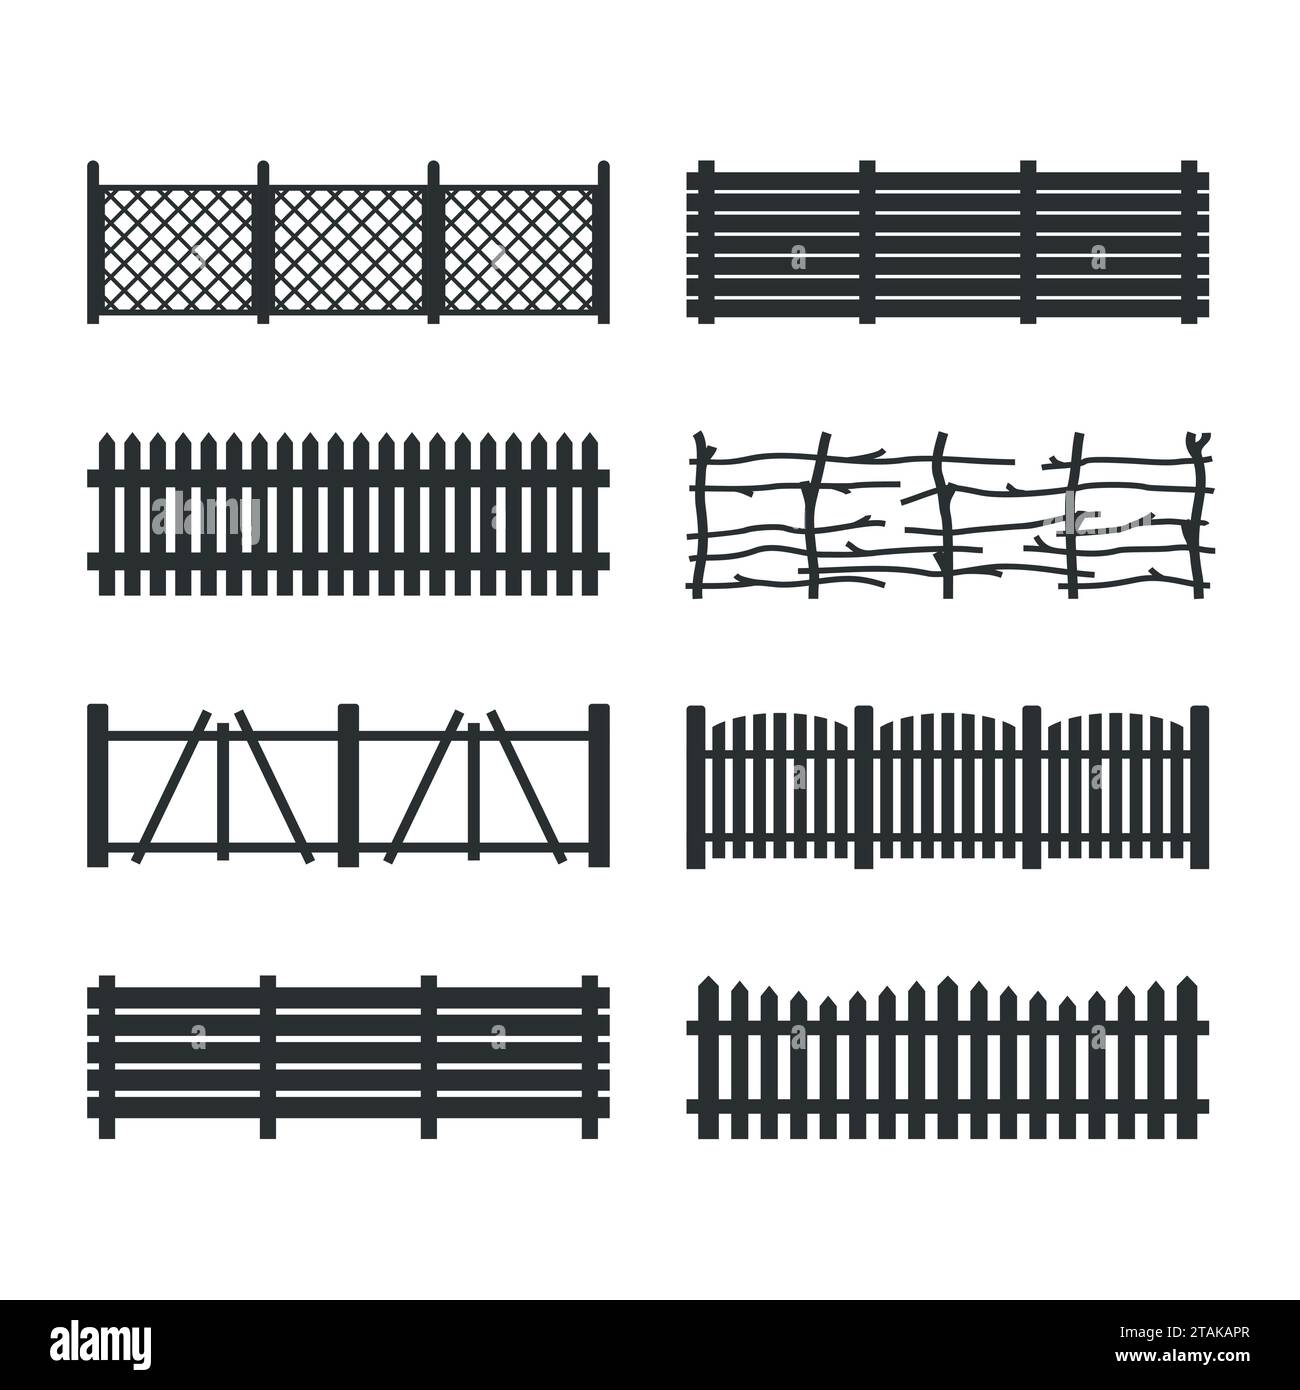 Impostare recinzioni in legno isolate su sfondo bianco. Diverse icone di recinzioni da giardino illustrazioni vettoriali. Costruzione di sagome in legno per recinzioni rurali Illustrazione Vettoriale